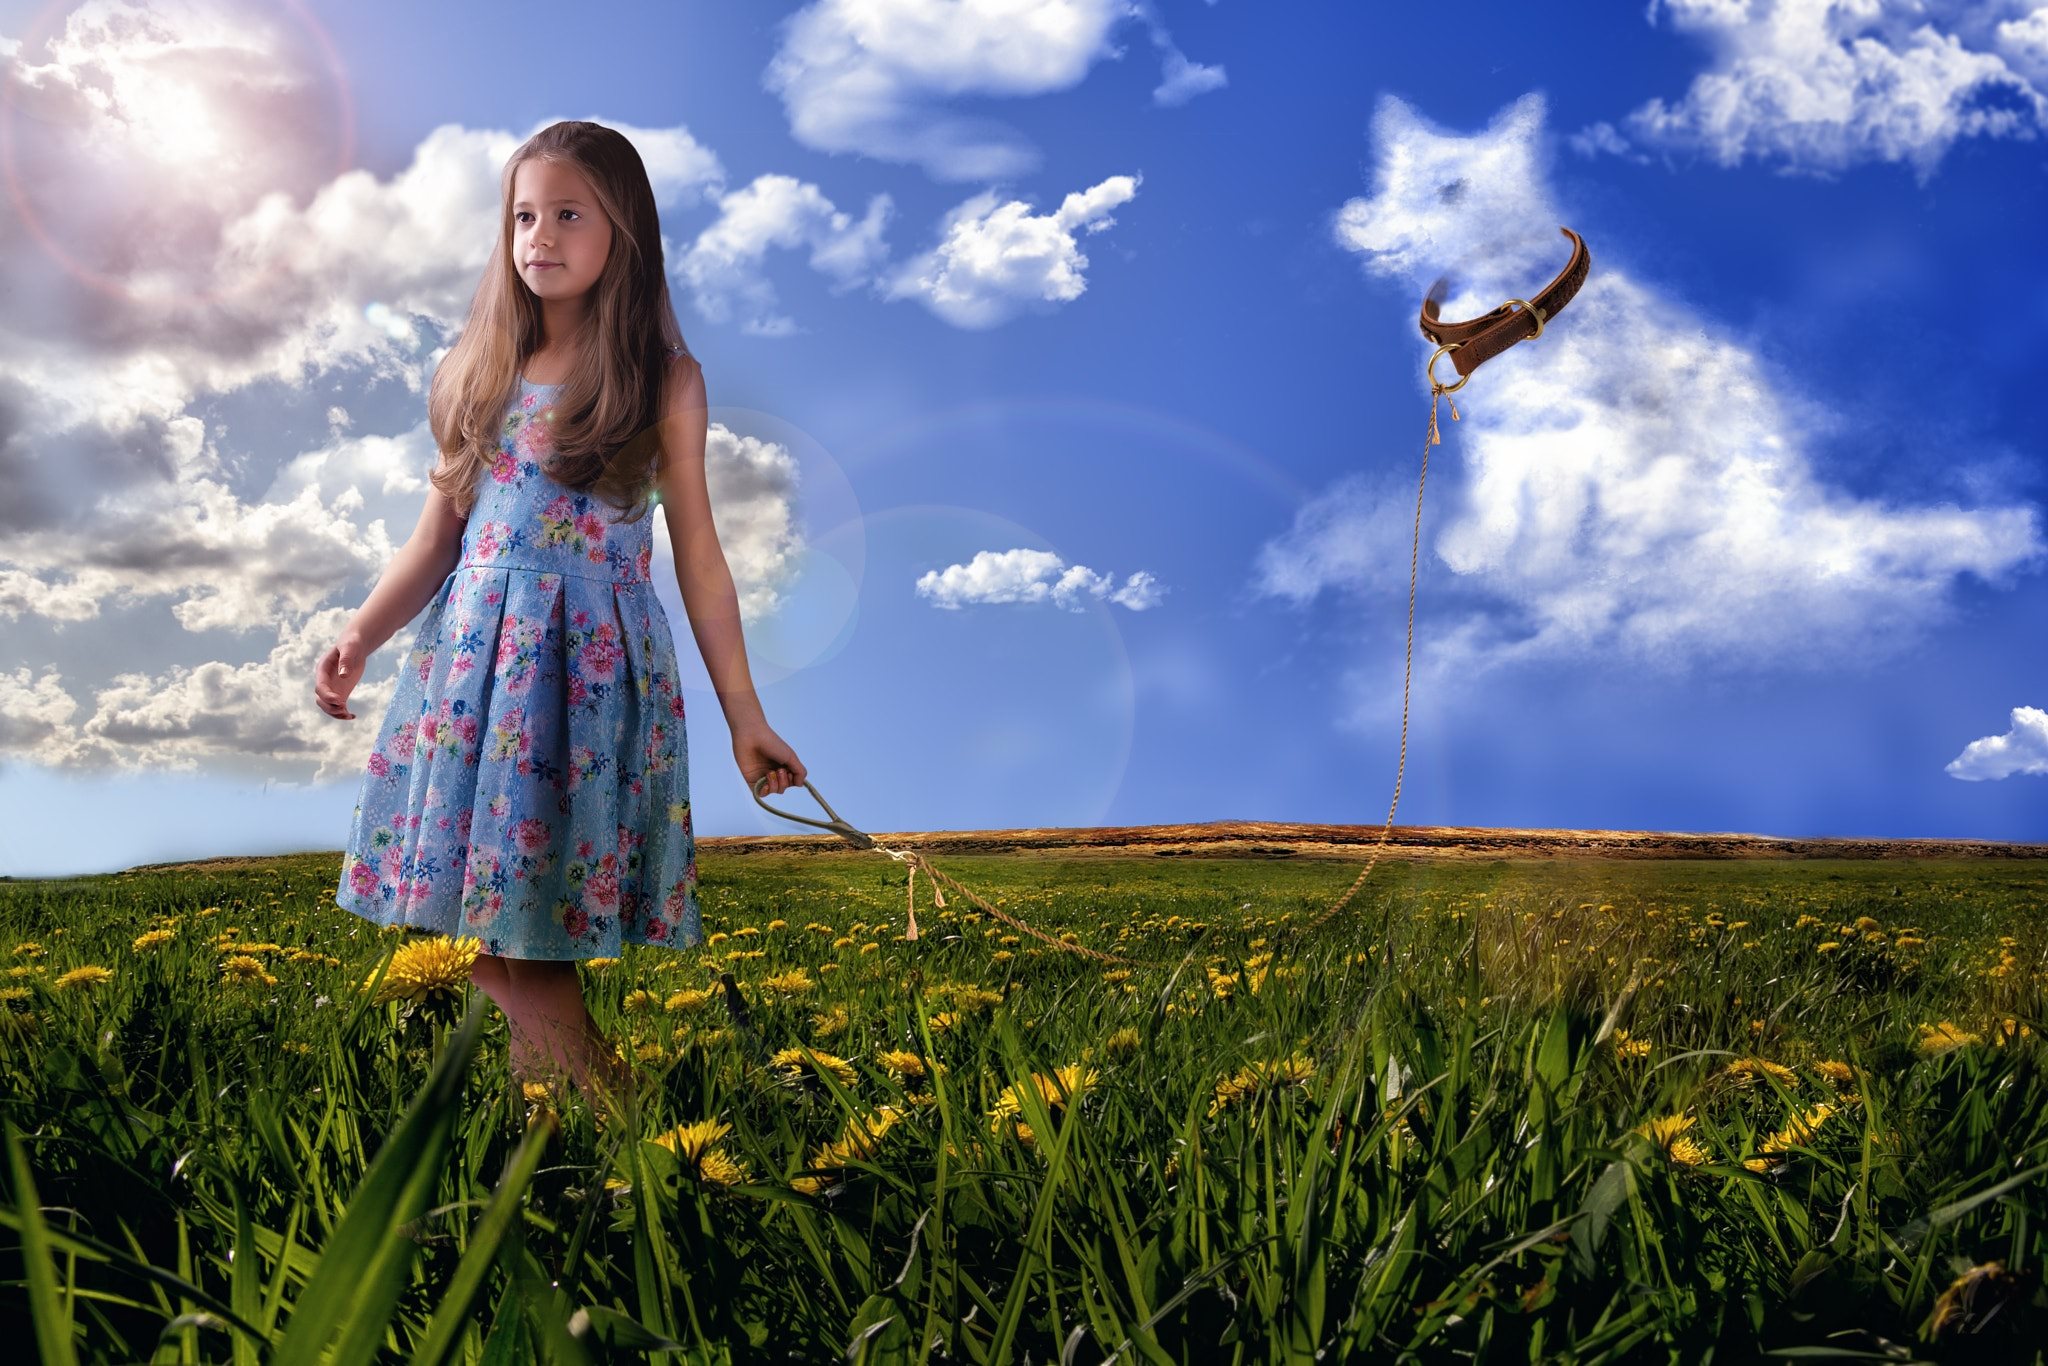 Обои для лета для девочек. Девочка. Девочка на природе. Девочка на фоне поля. Девочка на фоне неба.